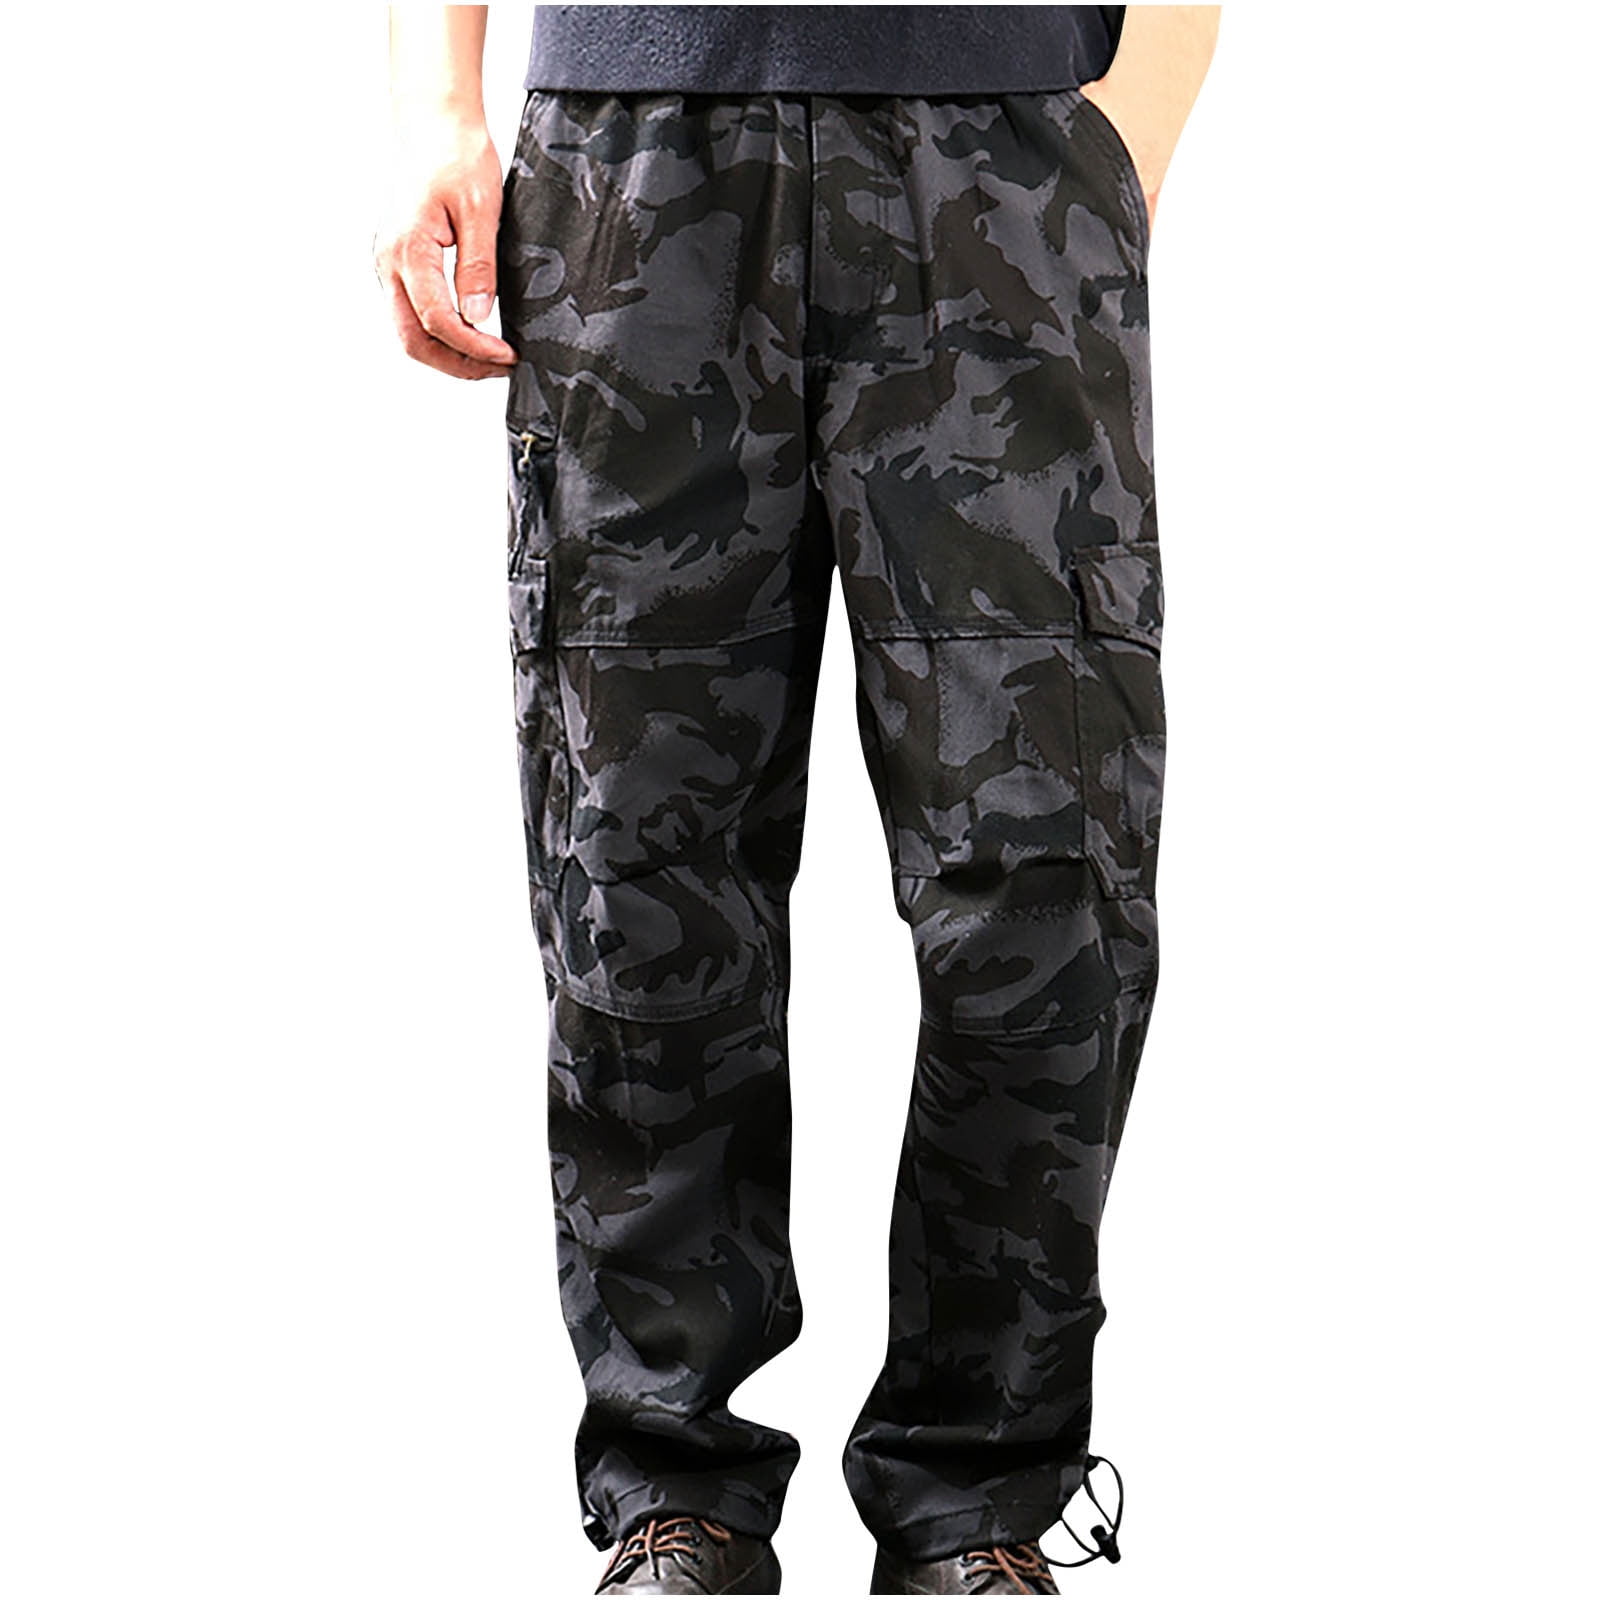 Namu Shop - Kaptain Sunshine Army Cargo Pants - Olive-mncb.edu.vn